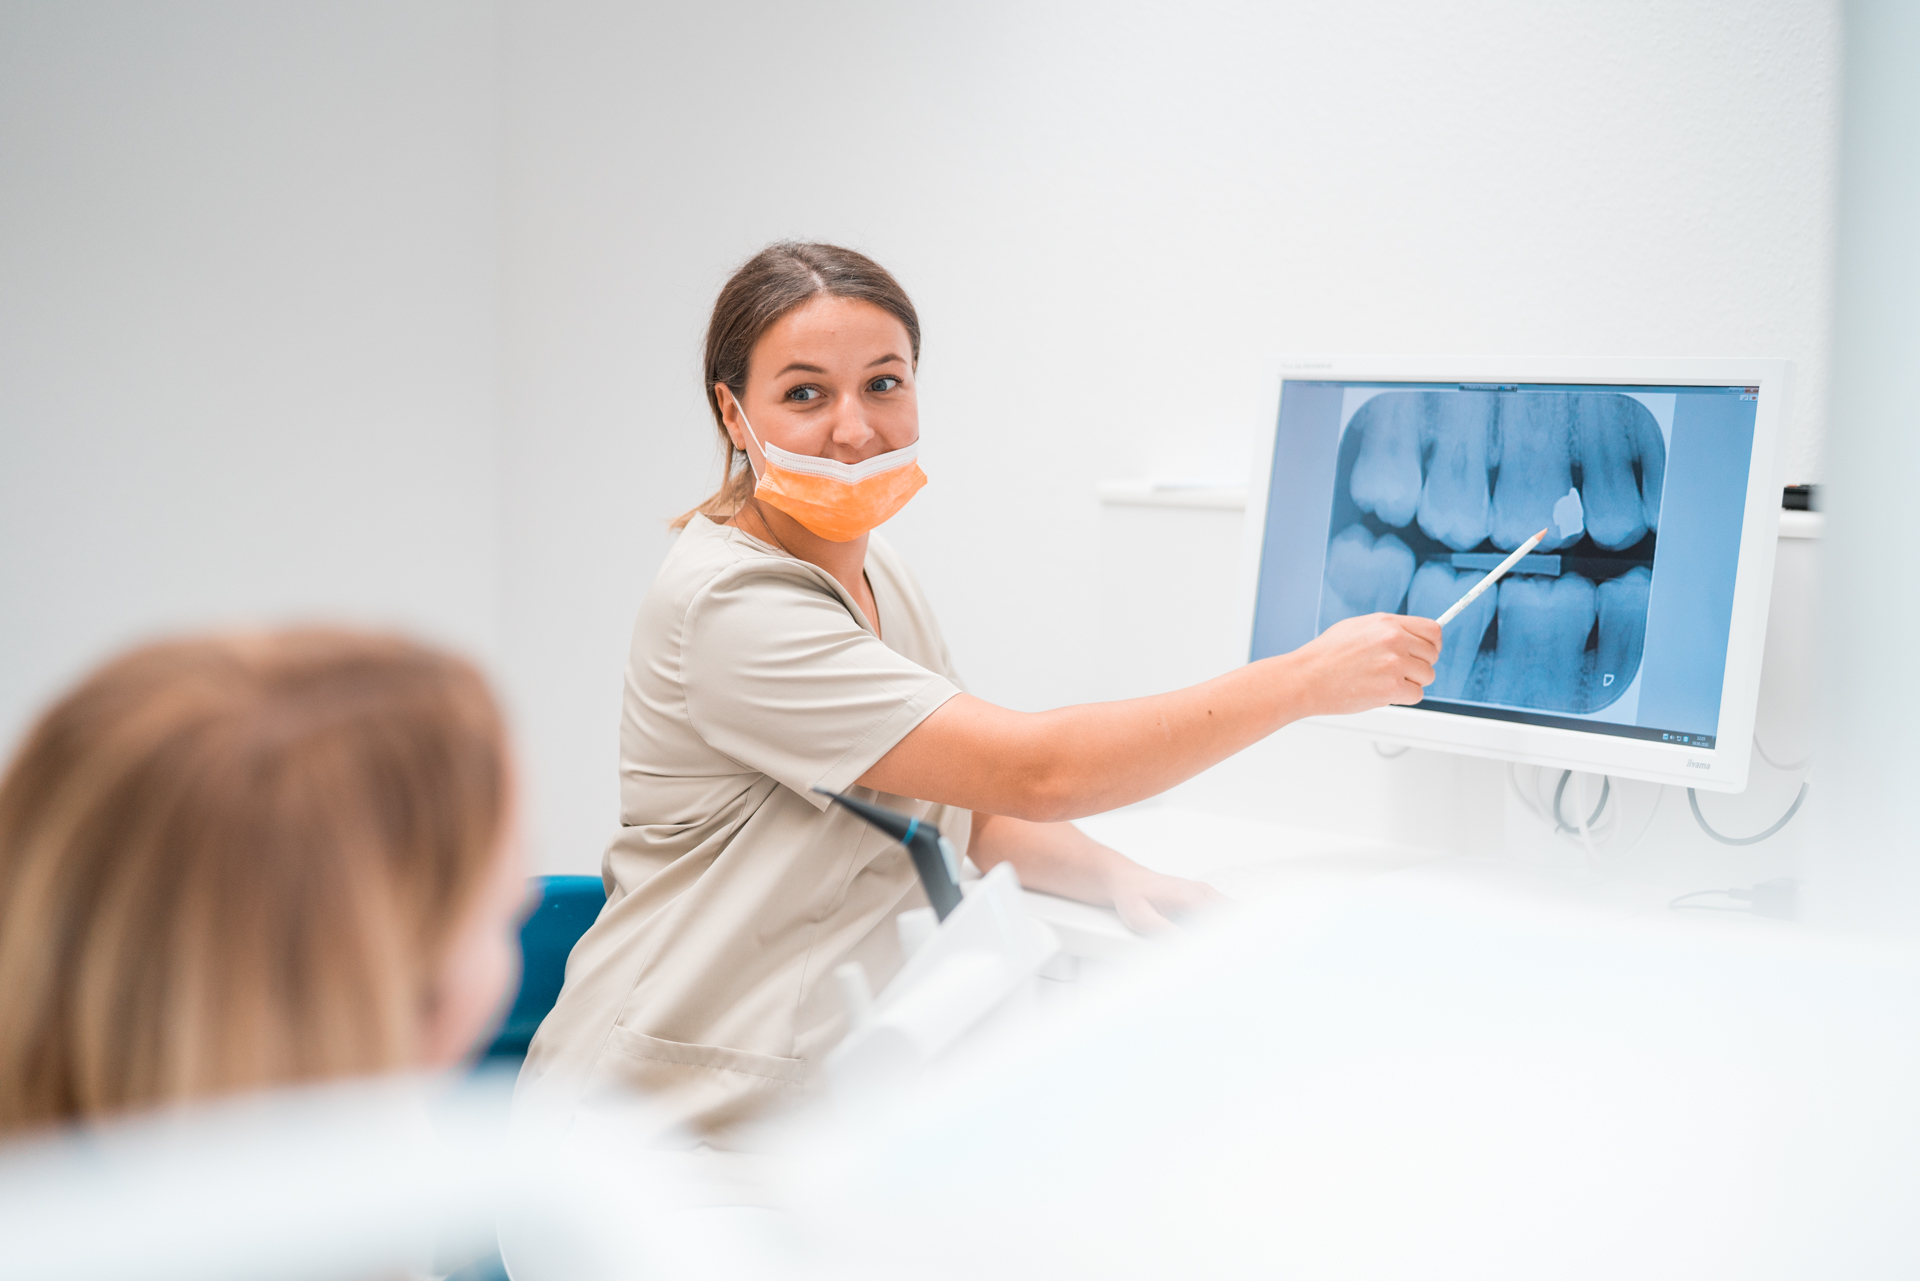 Zahnärztin zeigt auf einen Monitor für eine Patientin